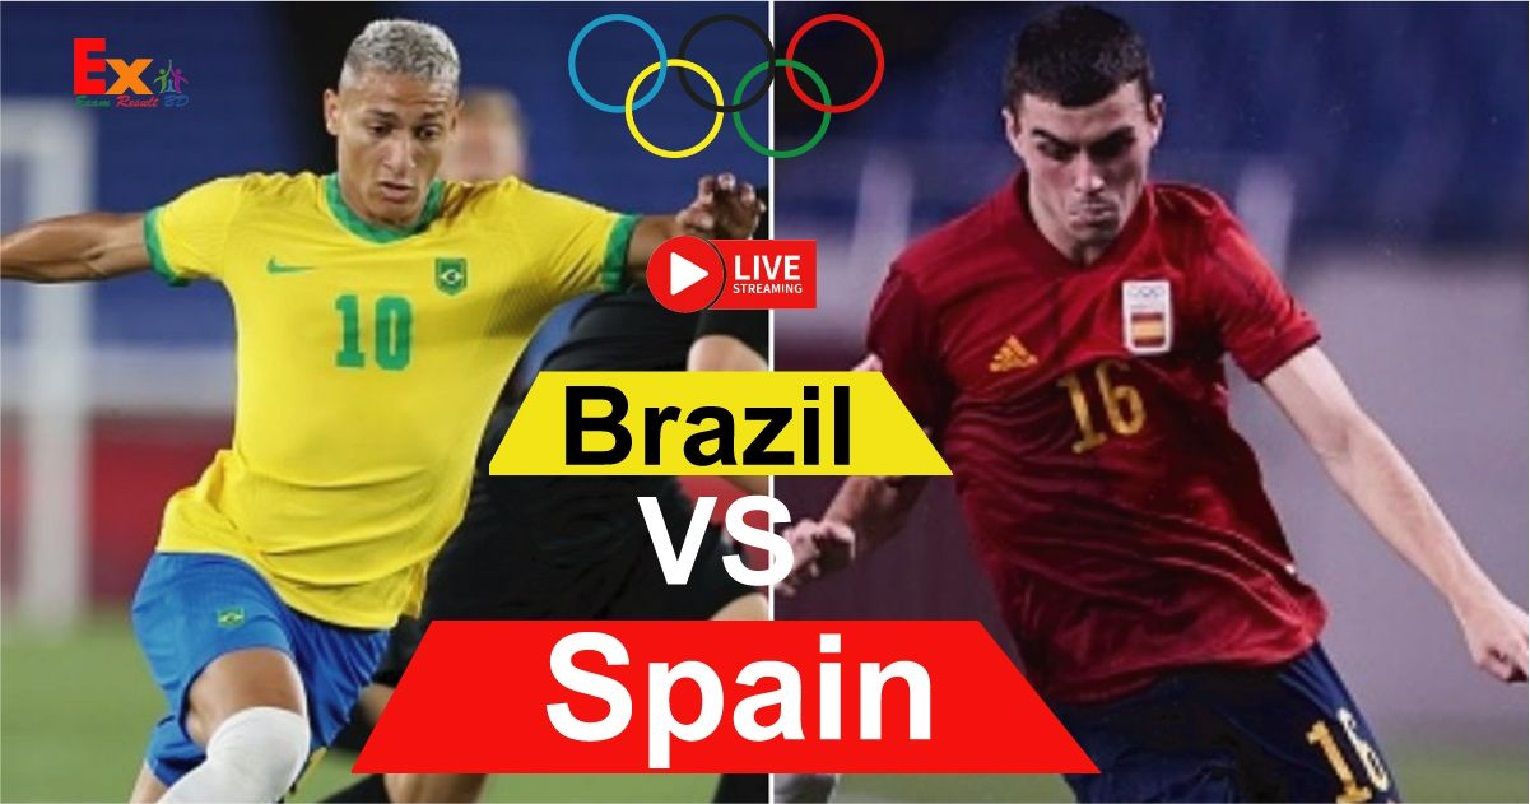 Spain vs brazil olimpiade